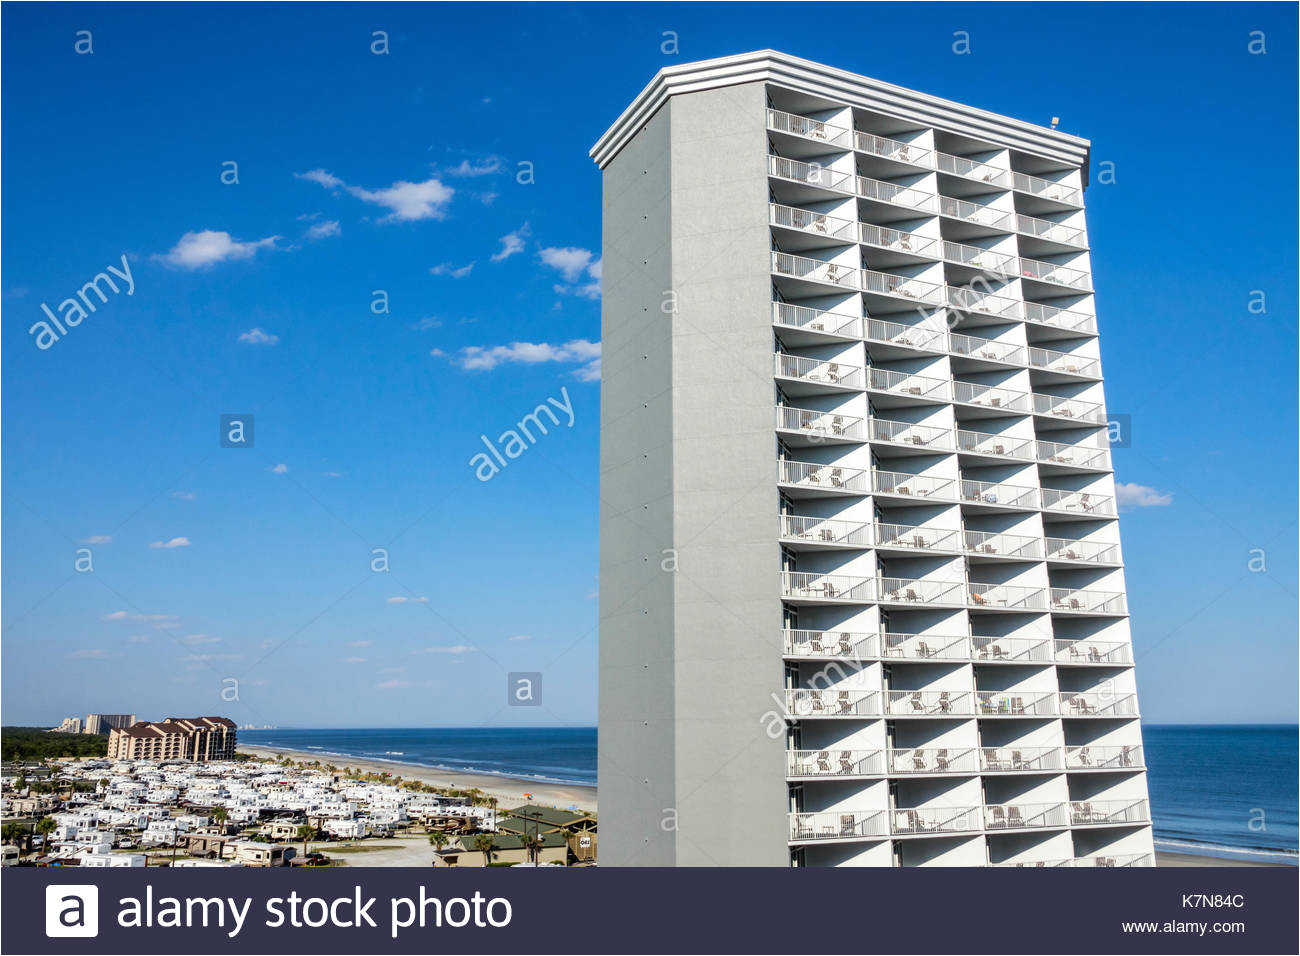 south carolina sc atlantic ocean myrtle beach wyndham seawatch plantation hotel resort high rise building